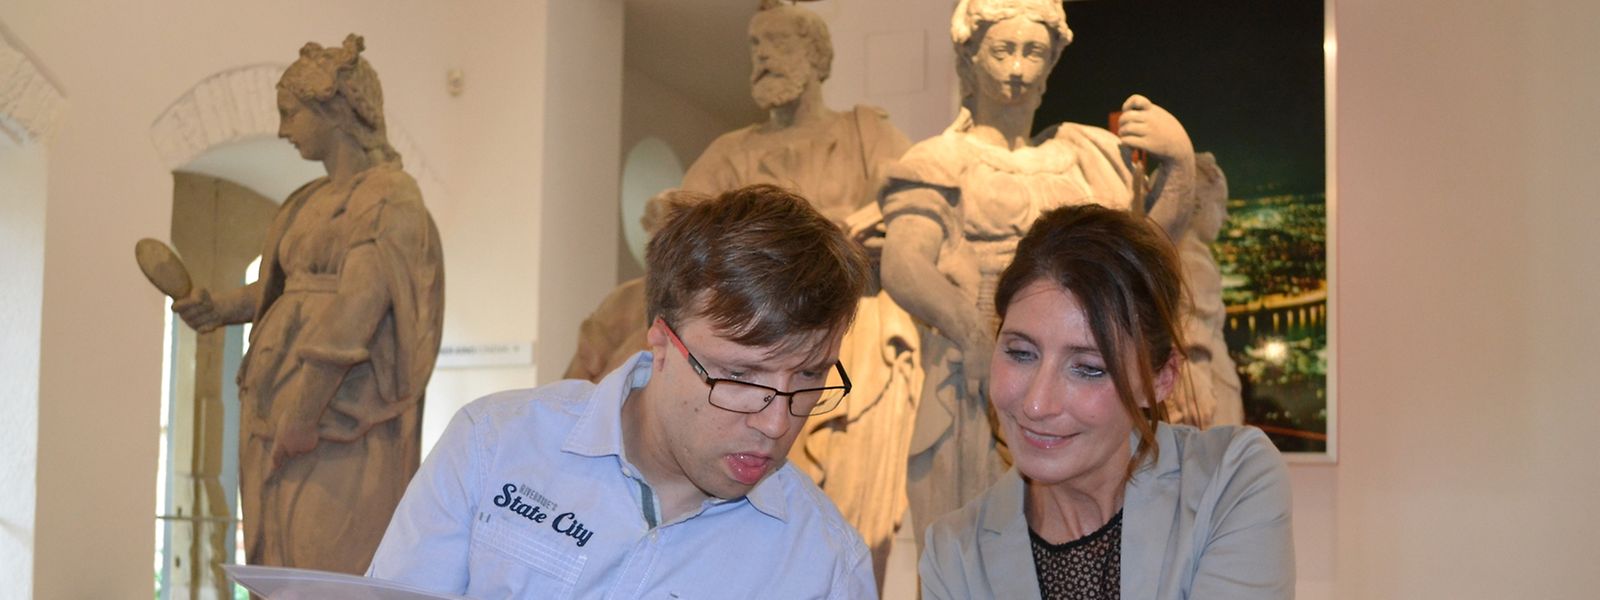 Das Stadtmuseum Simeonstift in Trier bietet nun auch einen Audioguide in „Leichter Sprache“ an. Patrick Loppnow und Andrea Paulus haben an dem Projekt mitgewirkt.